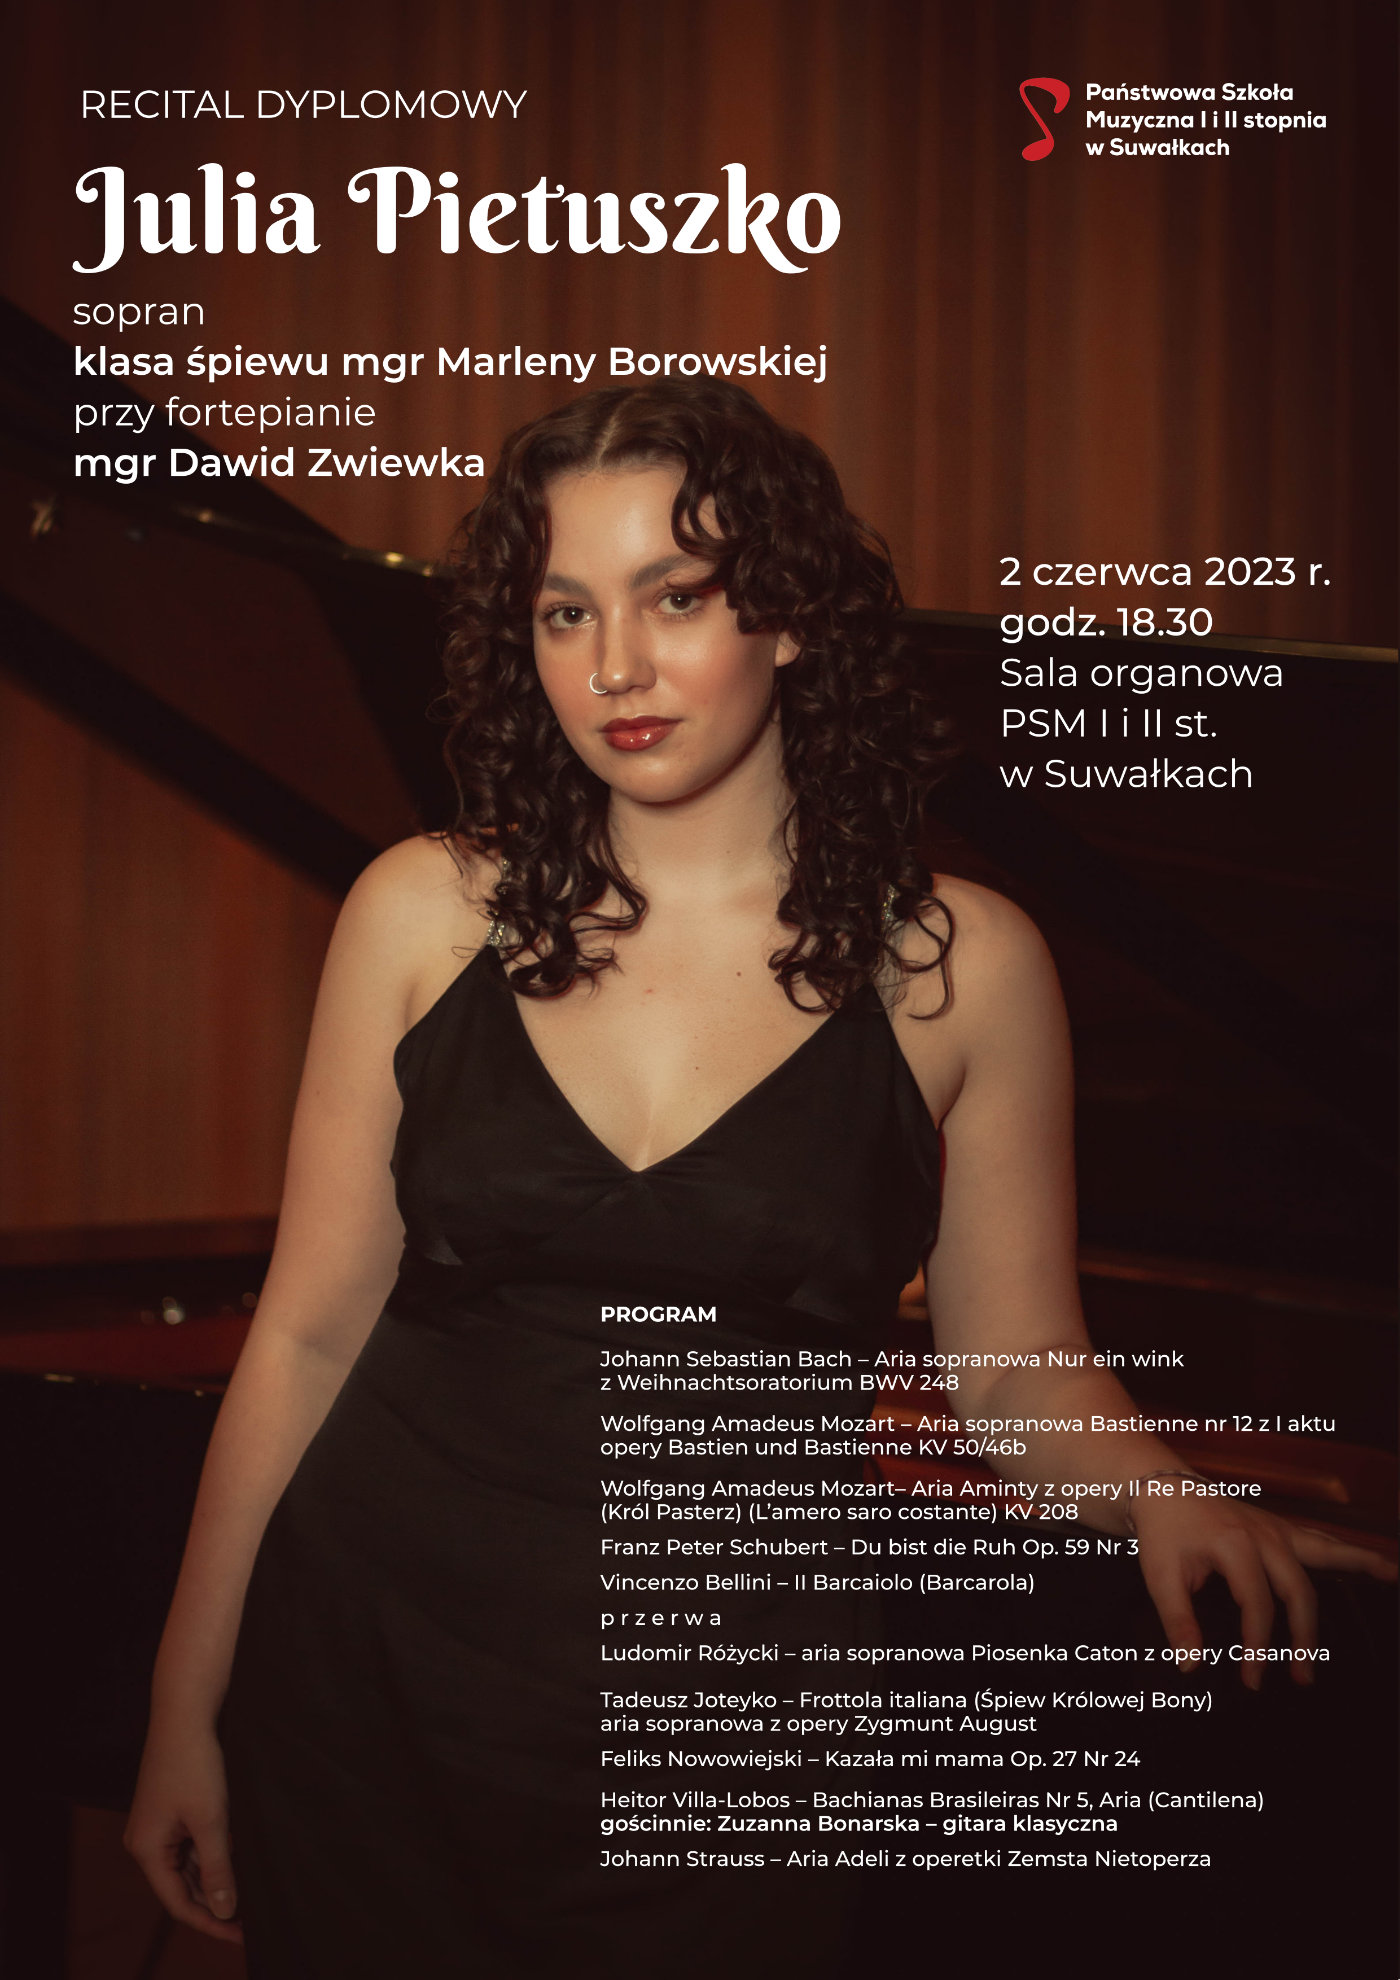 Plakat recitalu dyplomowego Julii Pietuszko